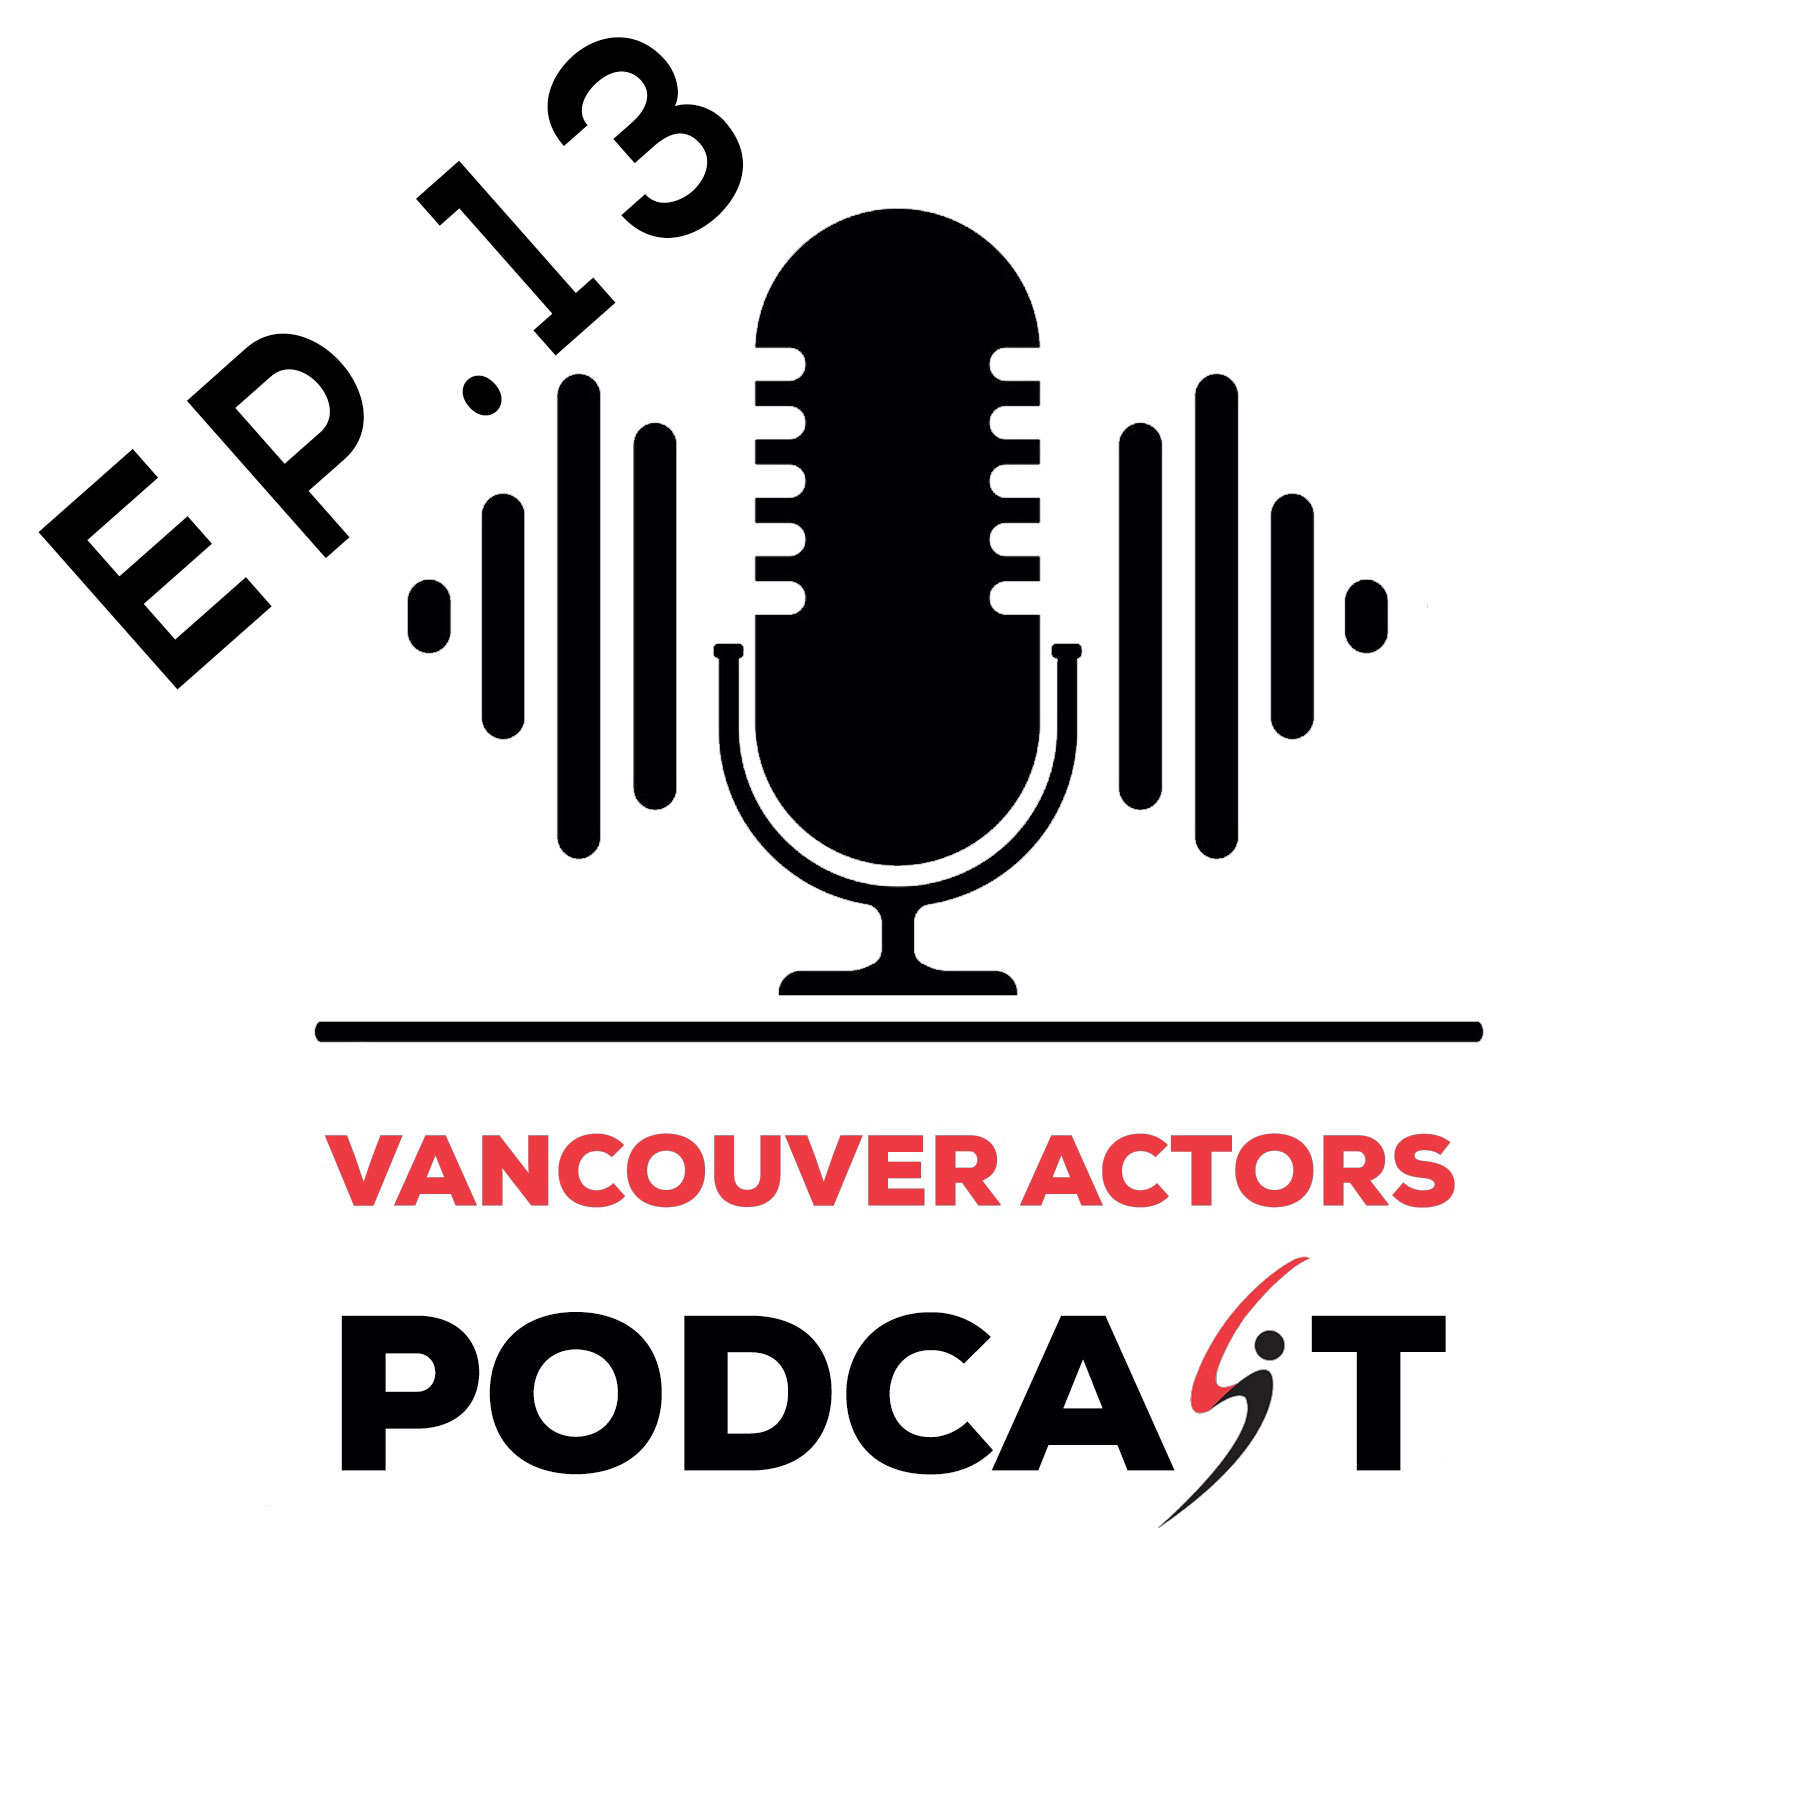 Vancouver Actors Podcast Michael Coleman Ep. 13